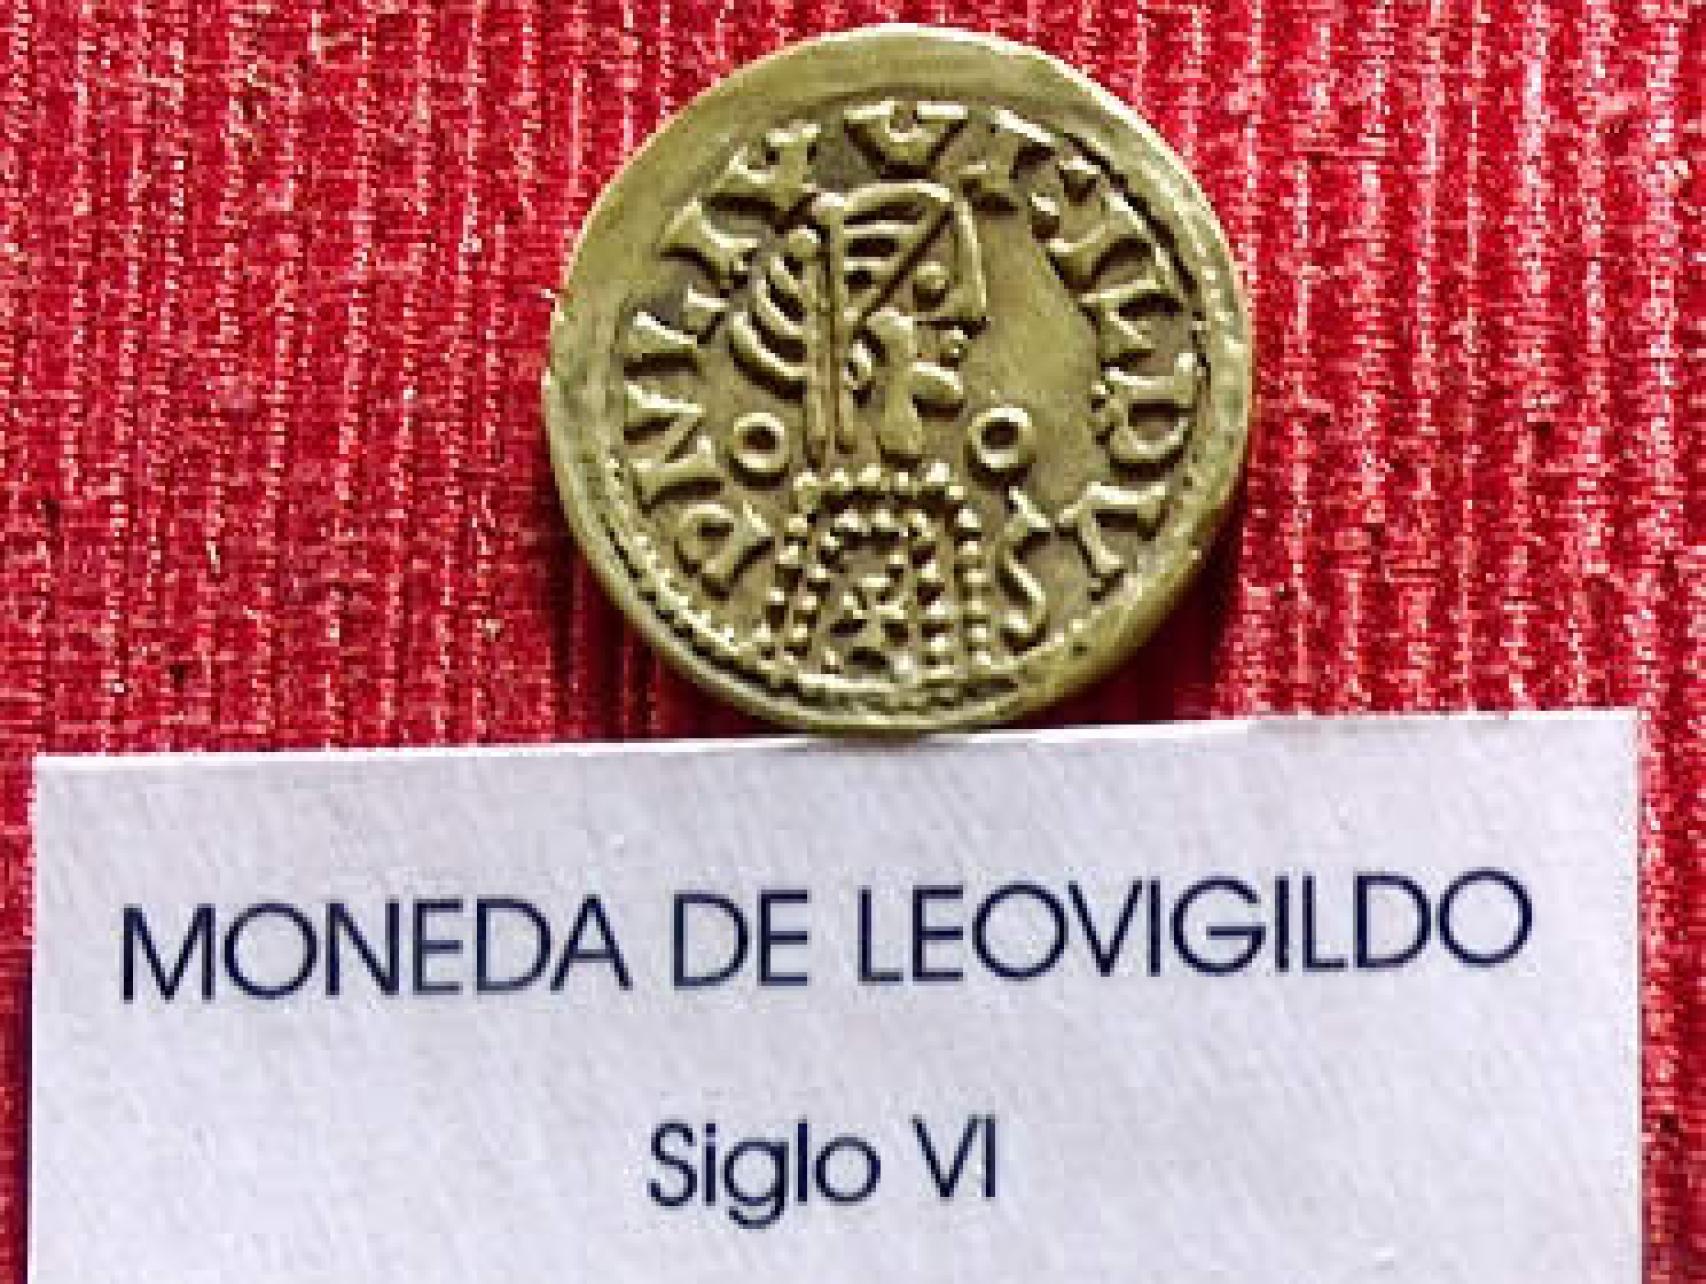 Moneda acuñada en el siglo VI.